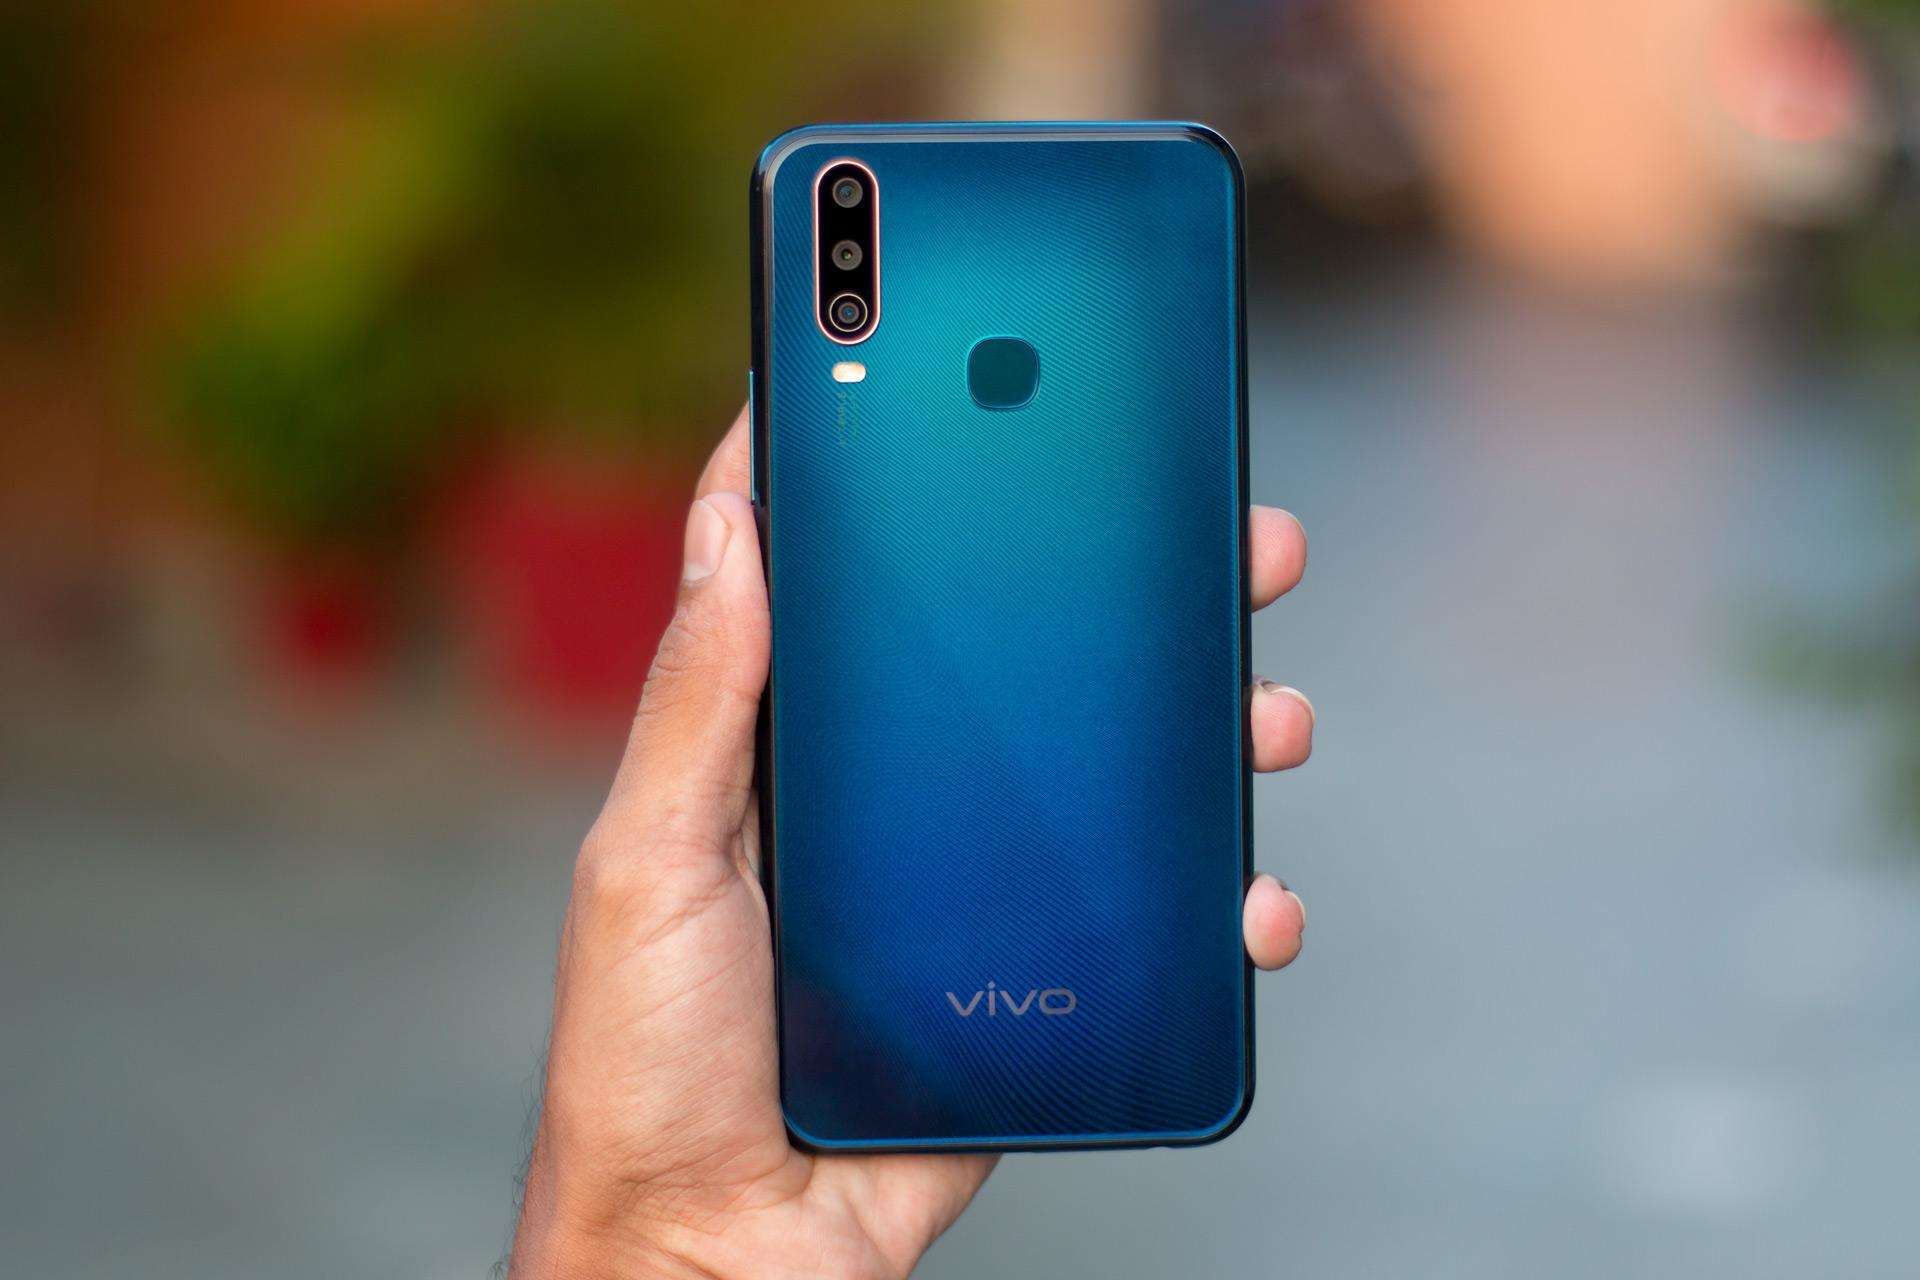 Vivo U10 फोन पर दी जा रही है 500 रूपये की छूट, जानें इसके स्पेसिफिकेशन